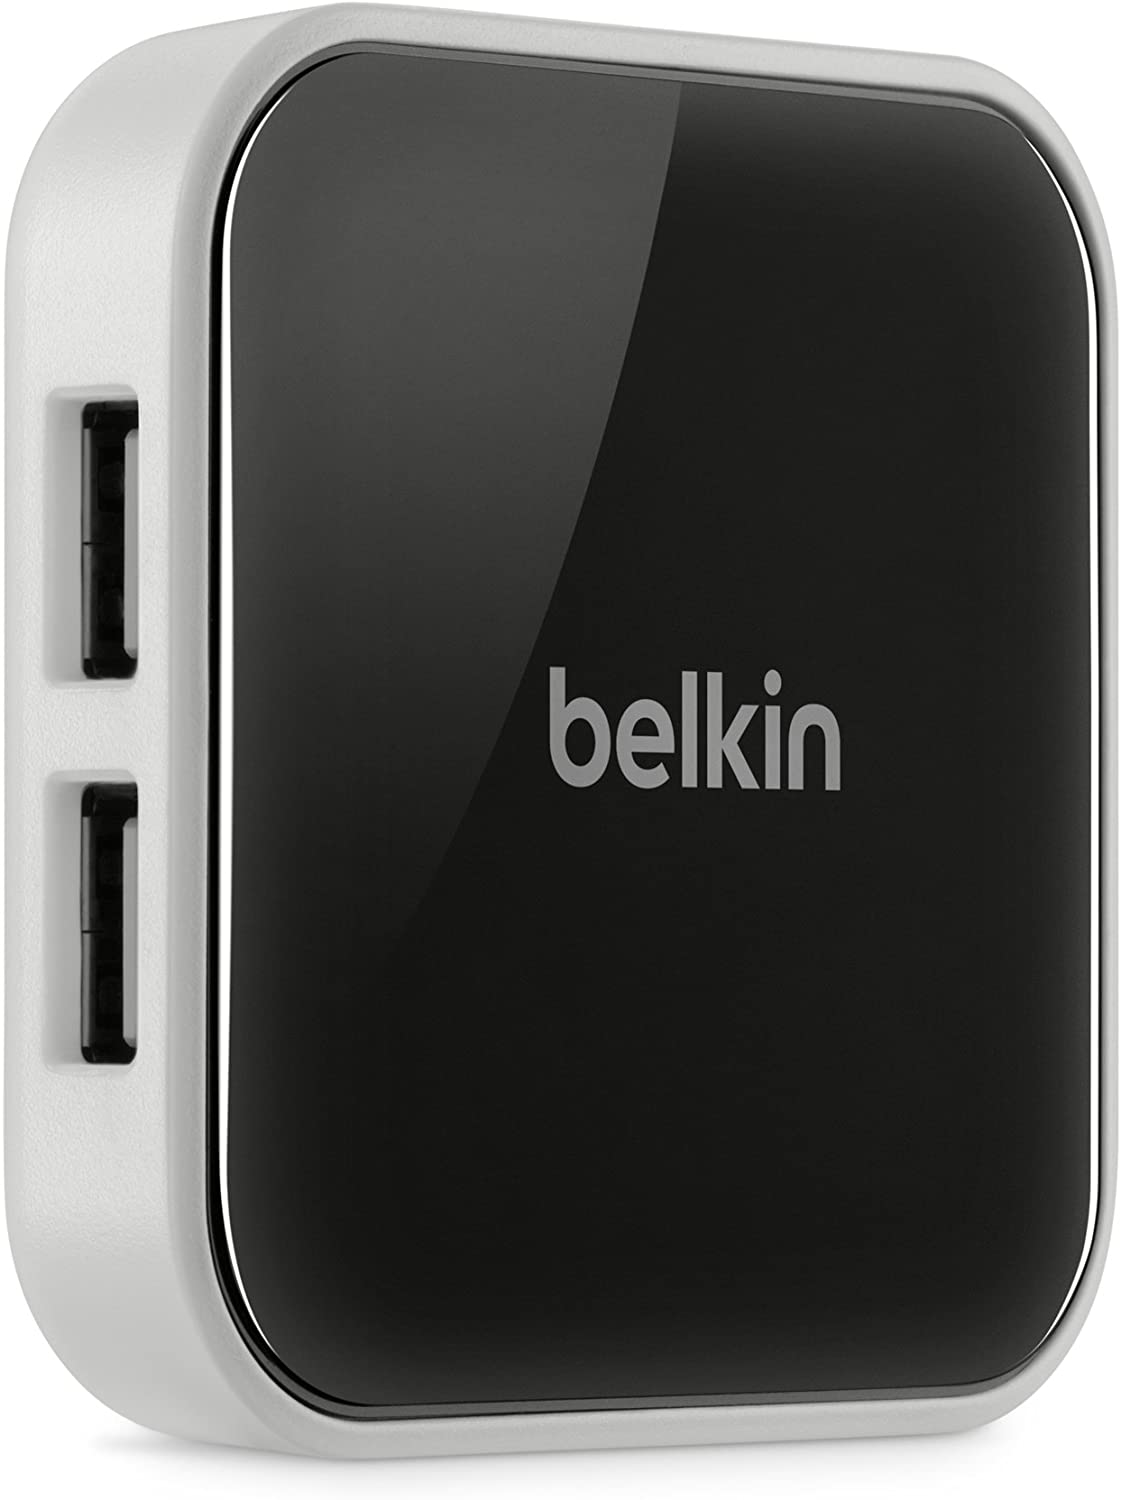 Belkin Ultra-Slim USB 2.0 Hub de computadora, Blanco y Negro